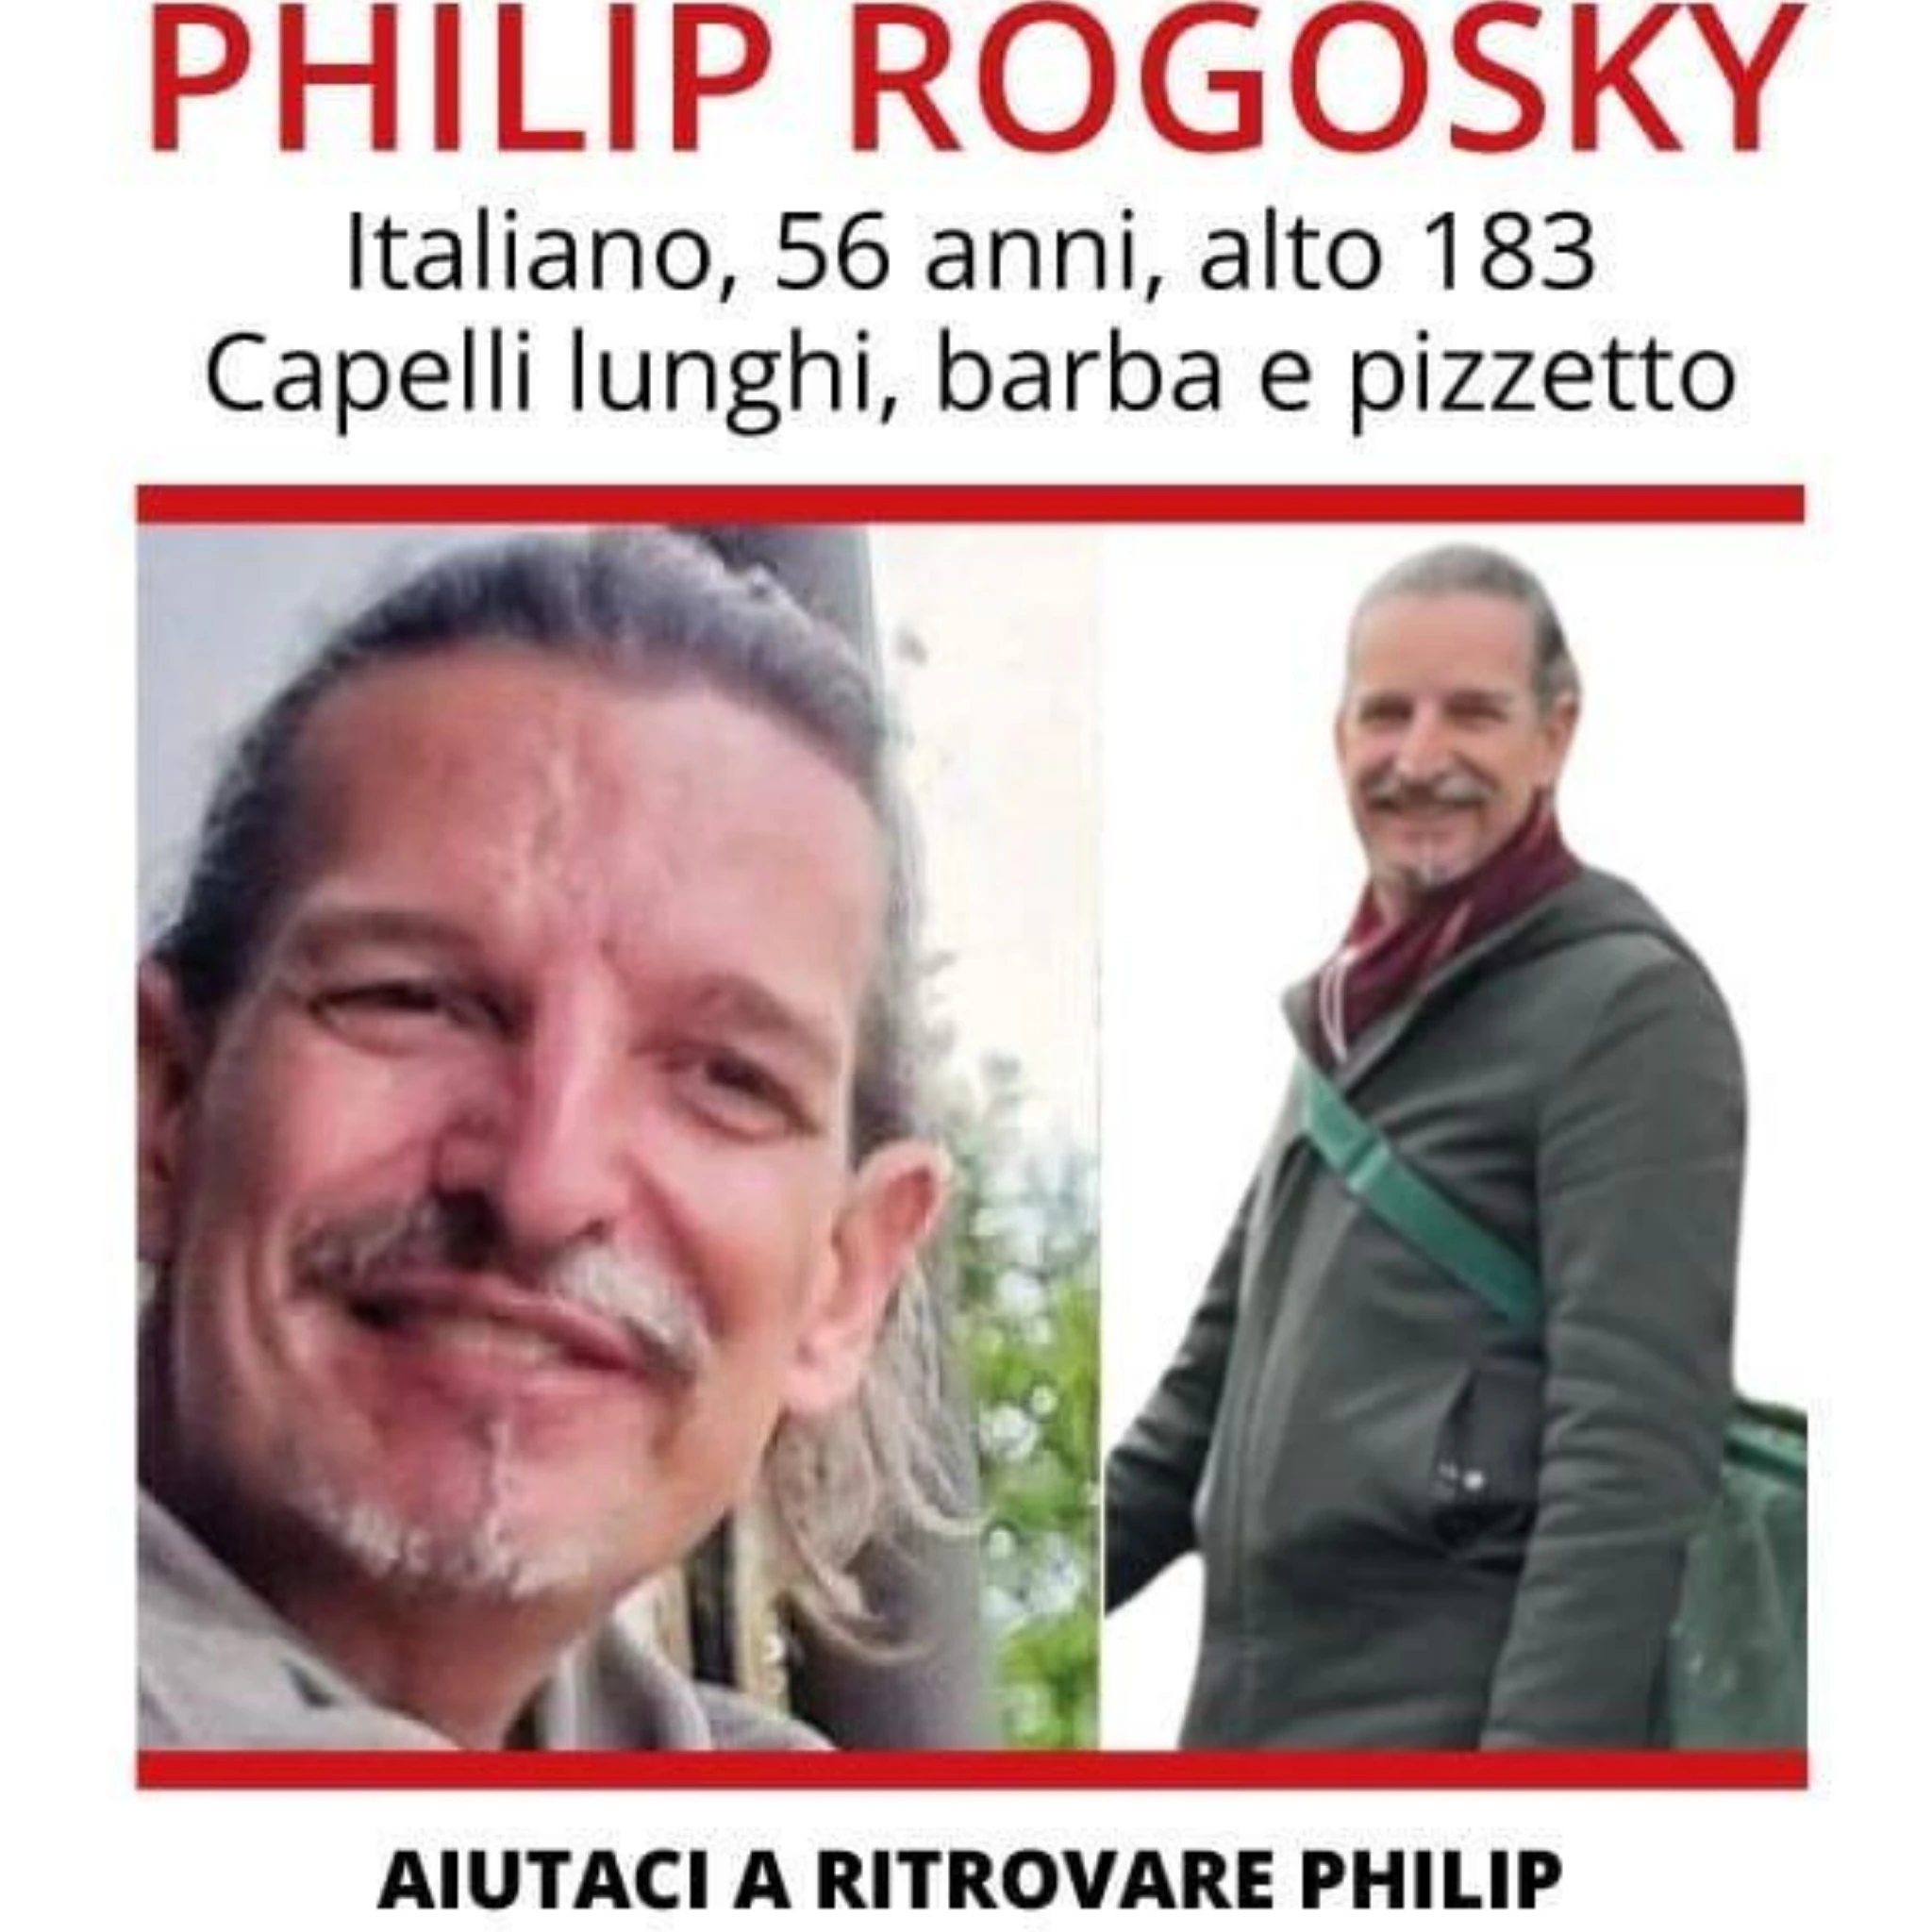 Trovato morto Philip Rogosky, il produttore cinematografico sparito 2 mesi fa: si indaga sulle cause